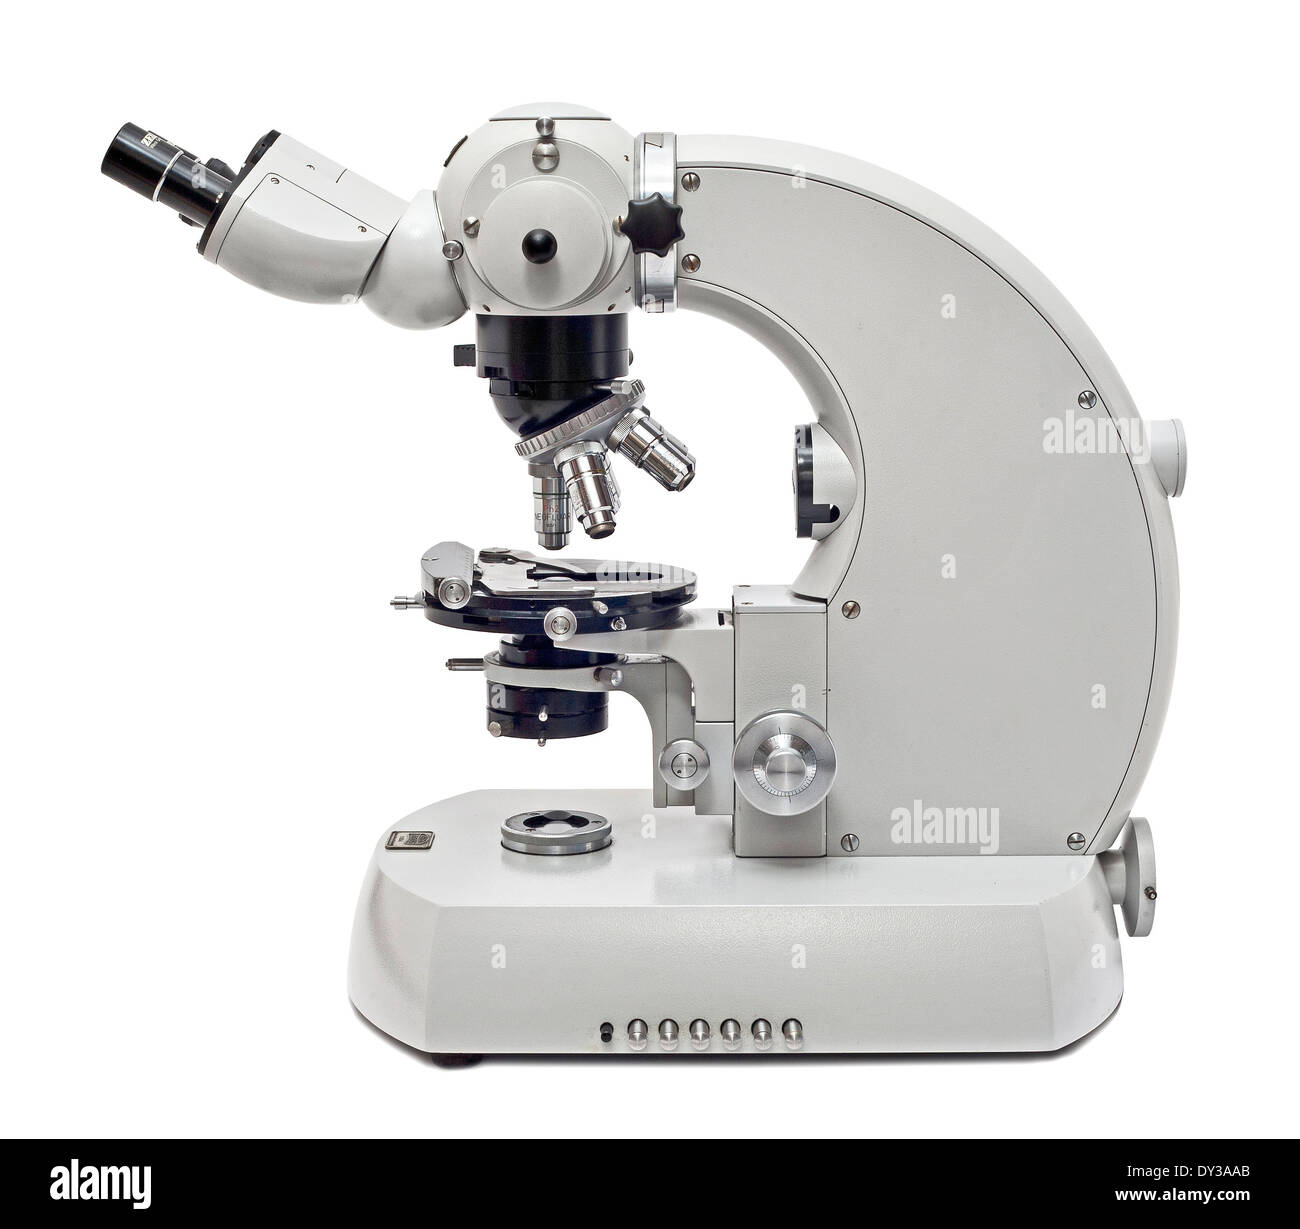 Zeiss Mikroskop Stockfotos und -bilder Kaufen - Alamy